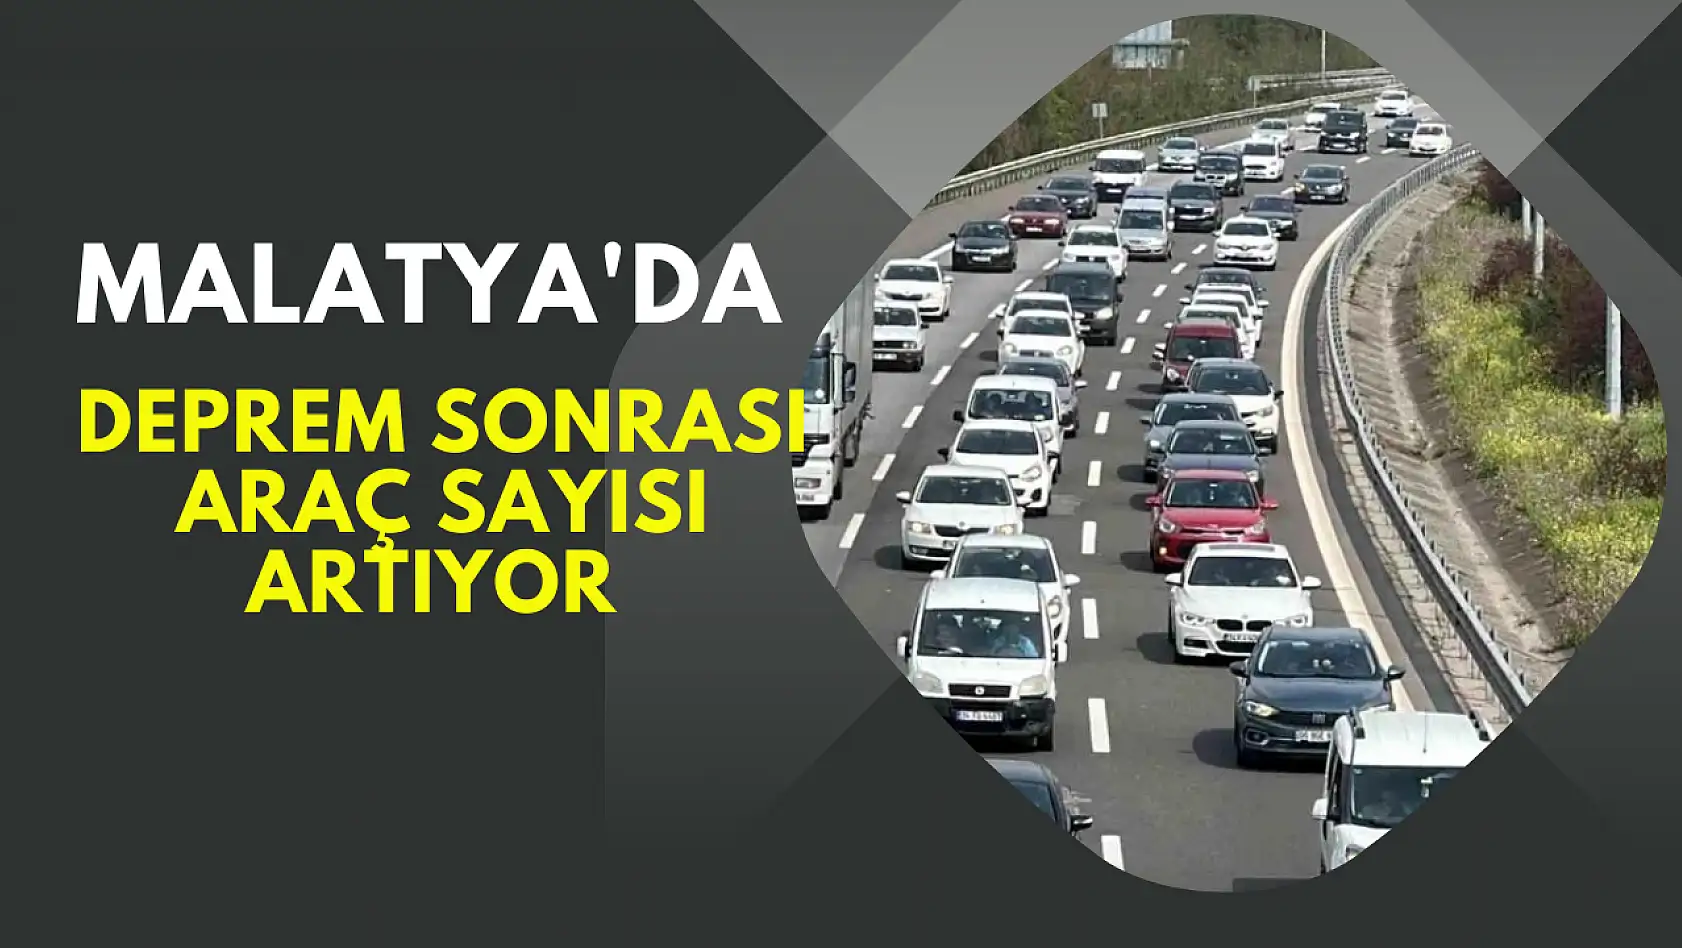 Malatya'da deprem sonrası araç sayısı artıyor